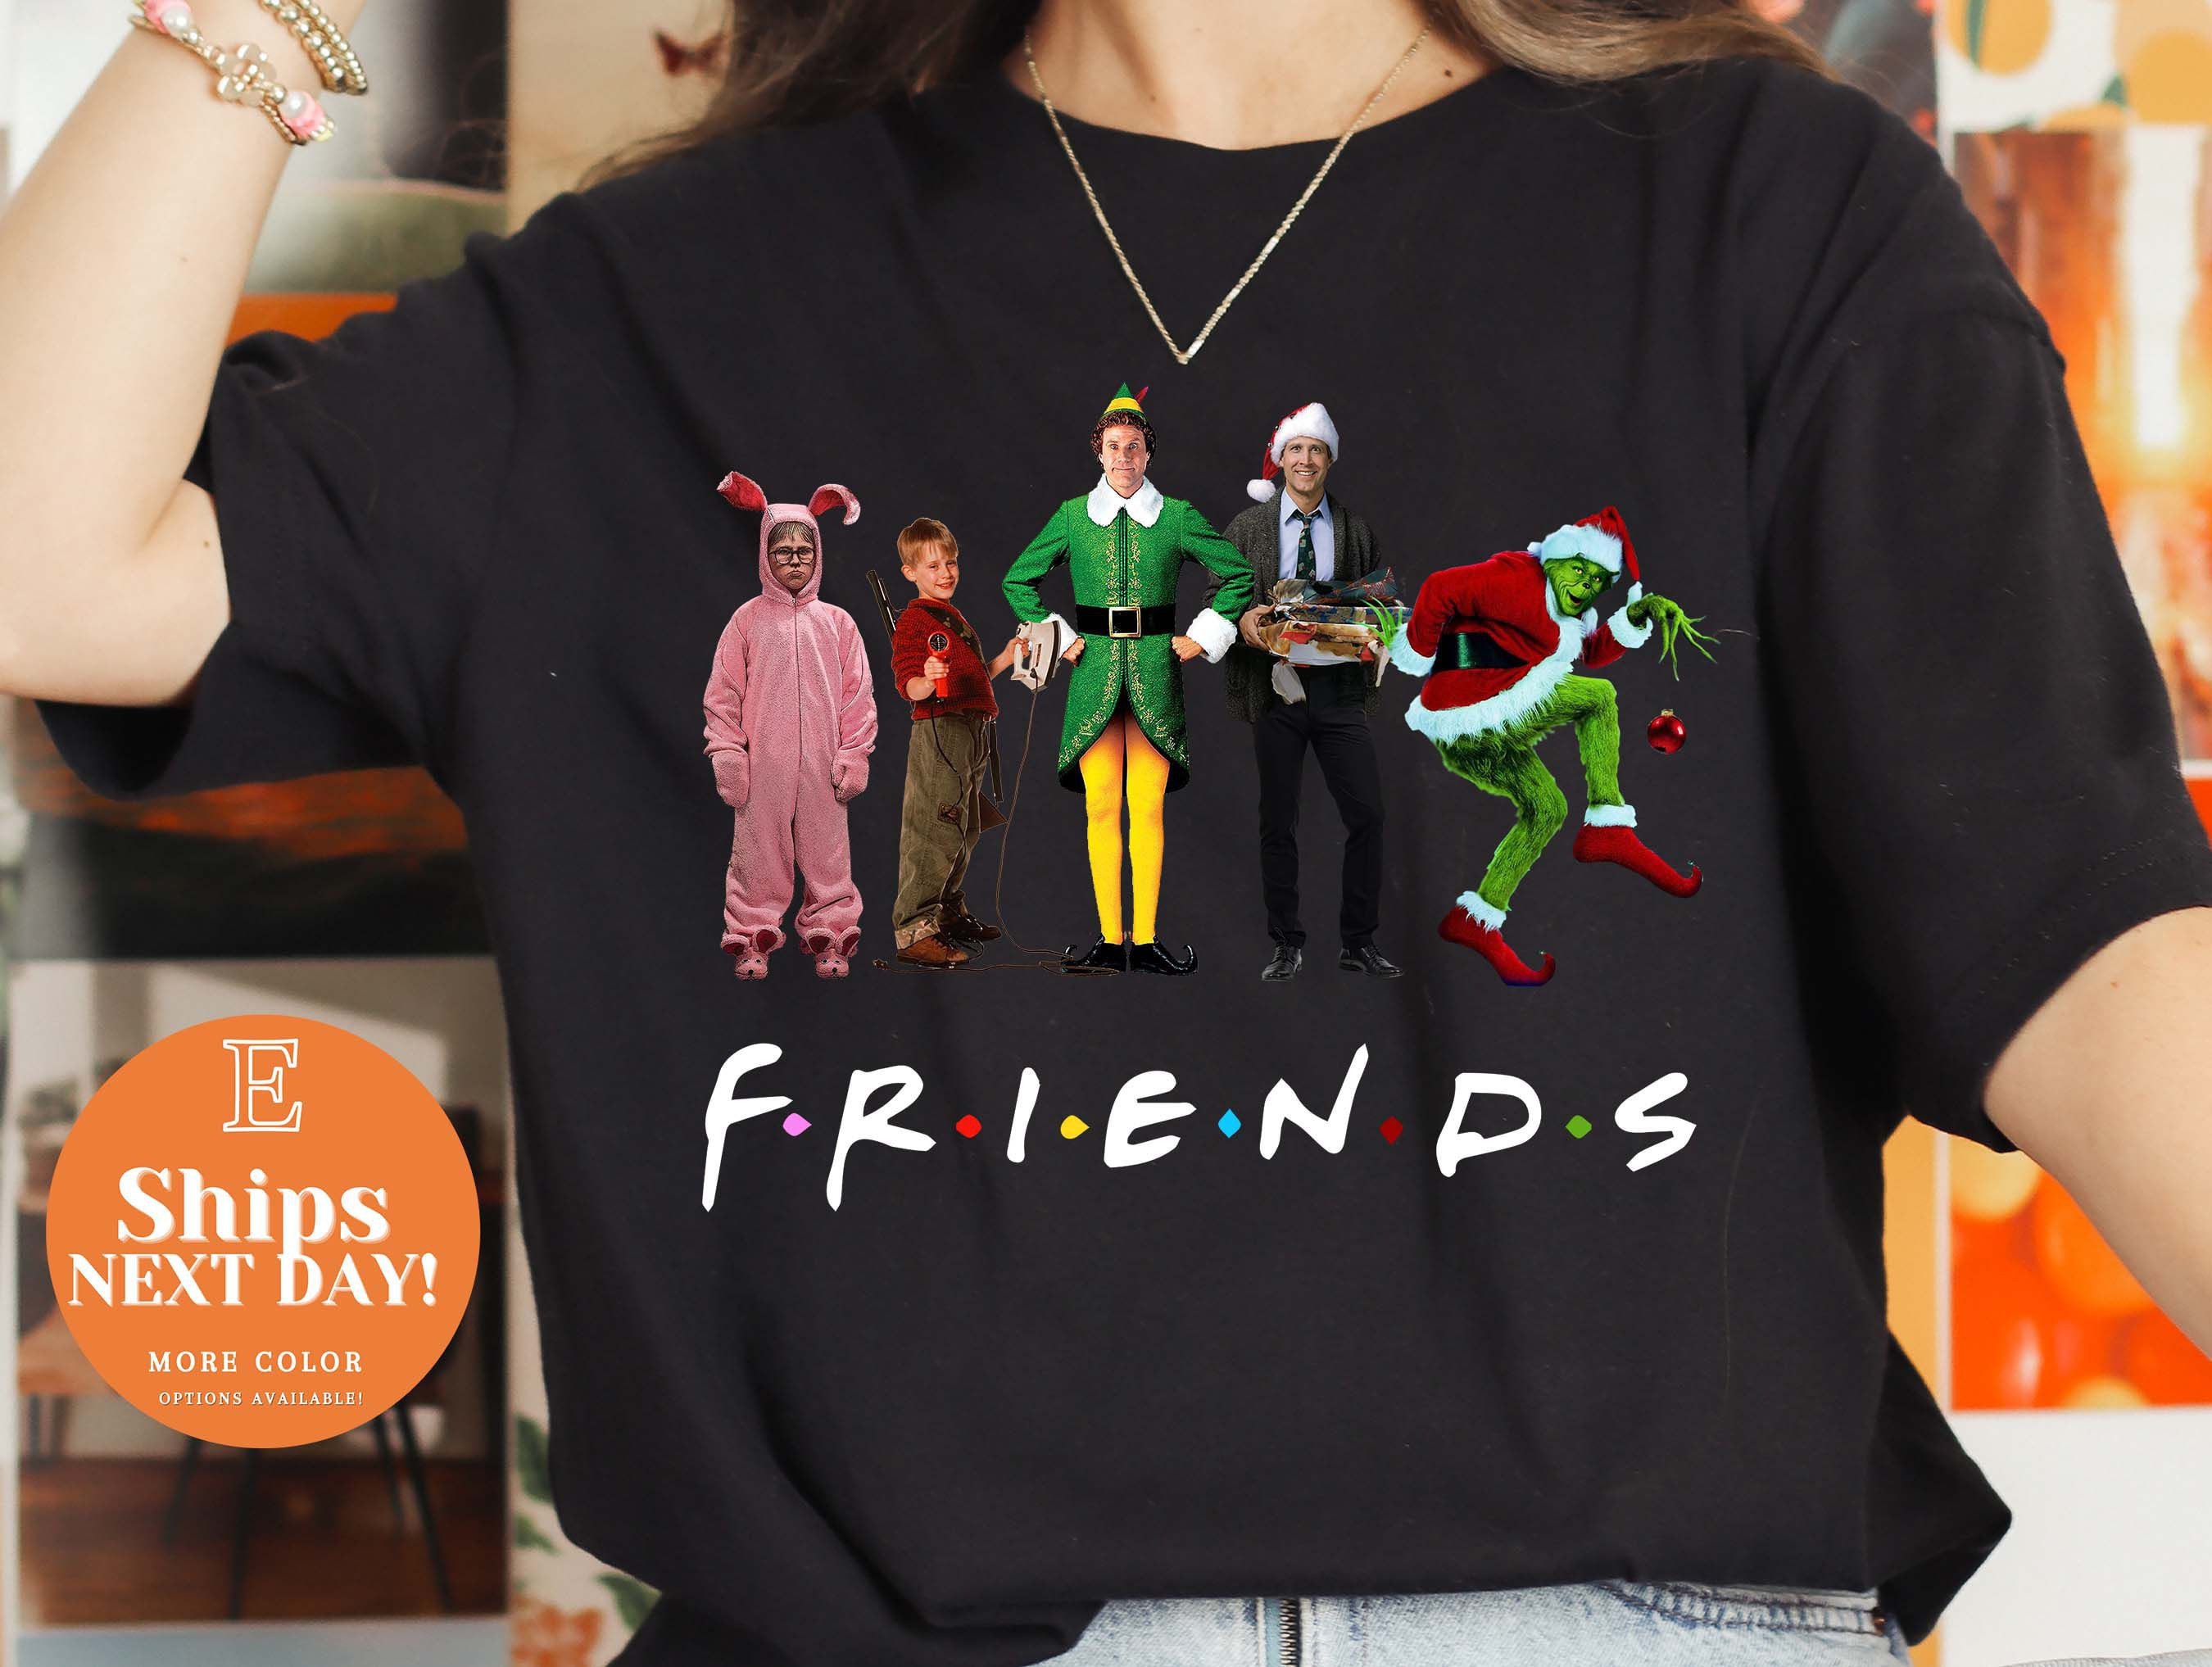 Discover Friends Christmas shirt, Christmas Shirt, Friends shirt, Christmas Movie Shirt